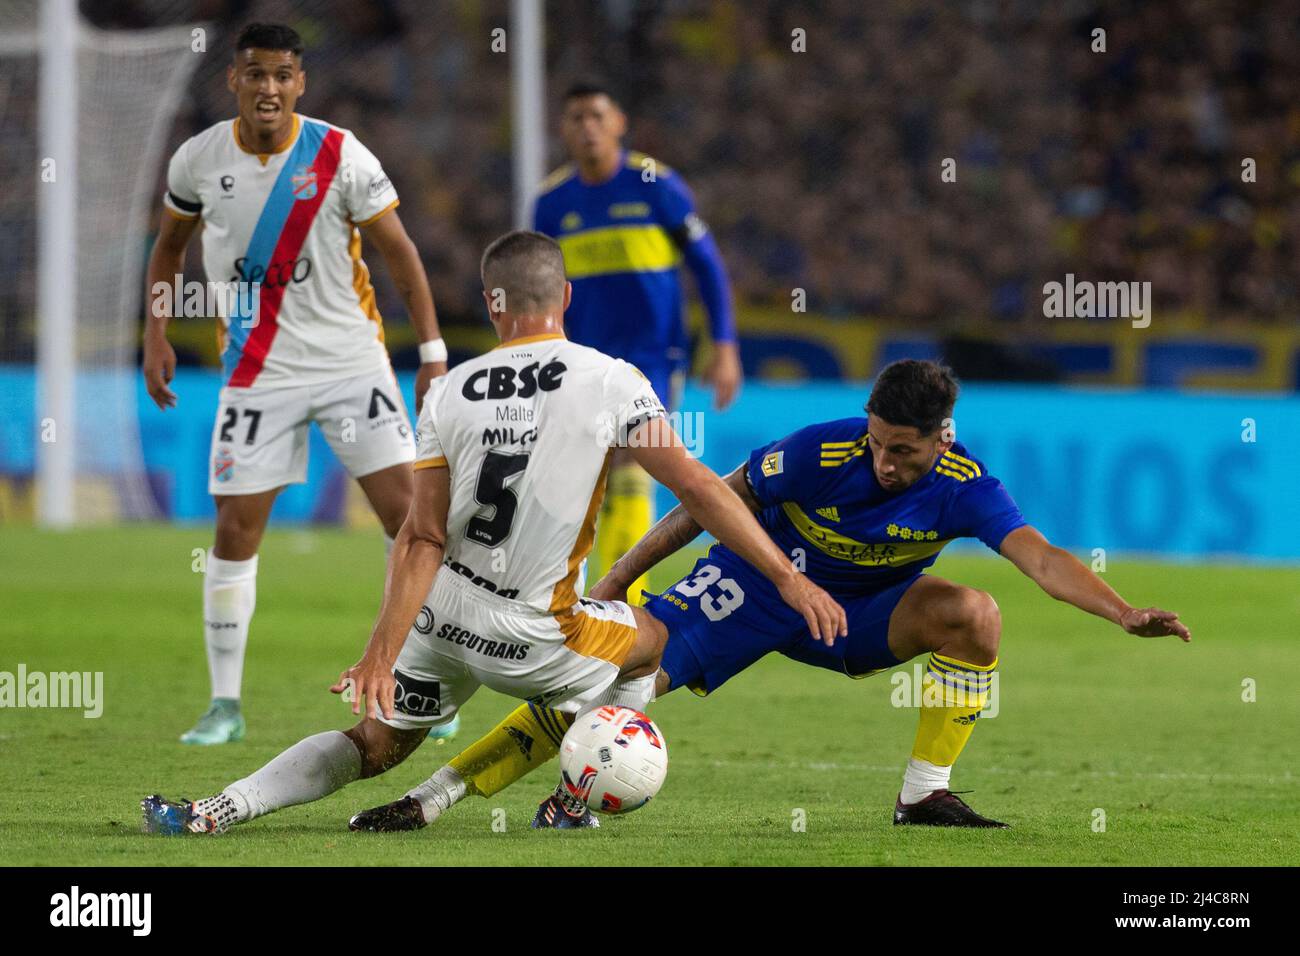 BUENOS AIRES, ARGENTINIEN - 3. APRIL:Alan Varela von Boca Juniors und Dardo Miloc von Arsenal kämpfen während des Spiels zwischen Boca Juniors und um den Ball Stockfoto